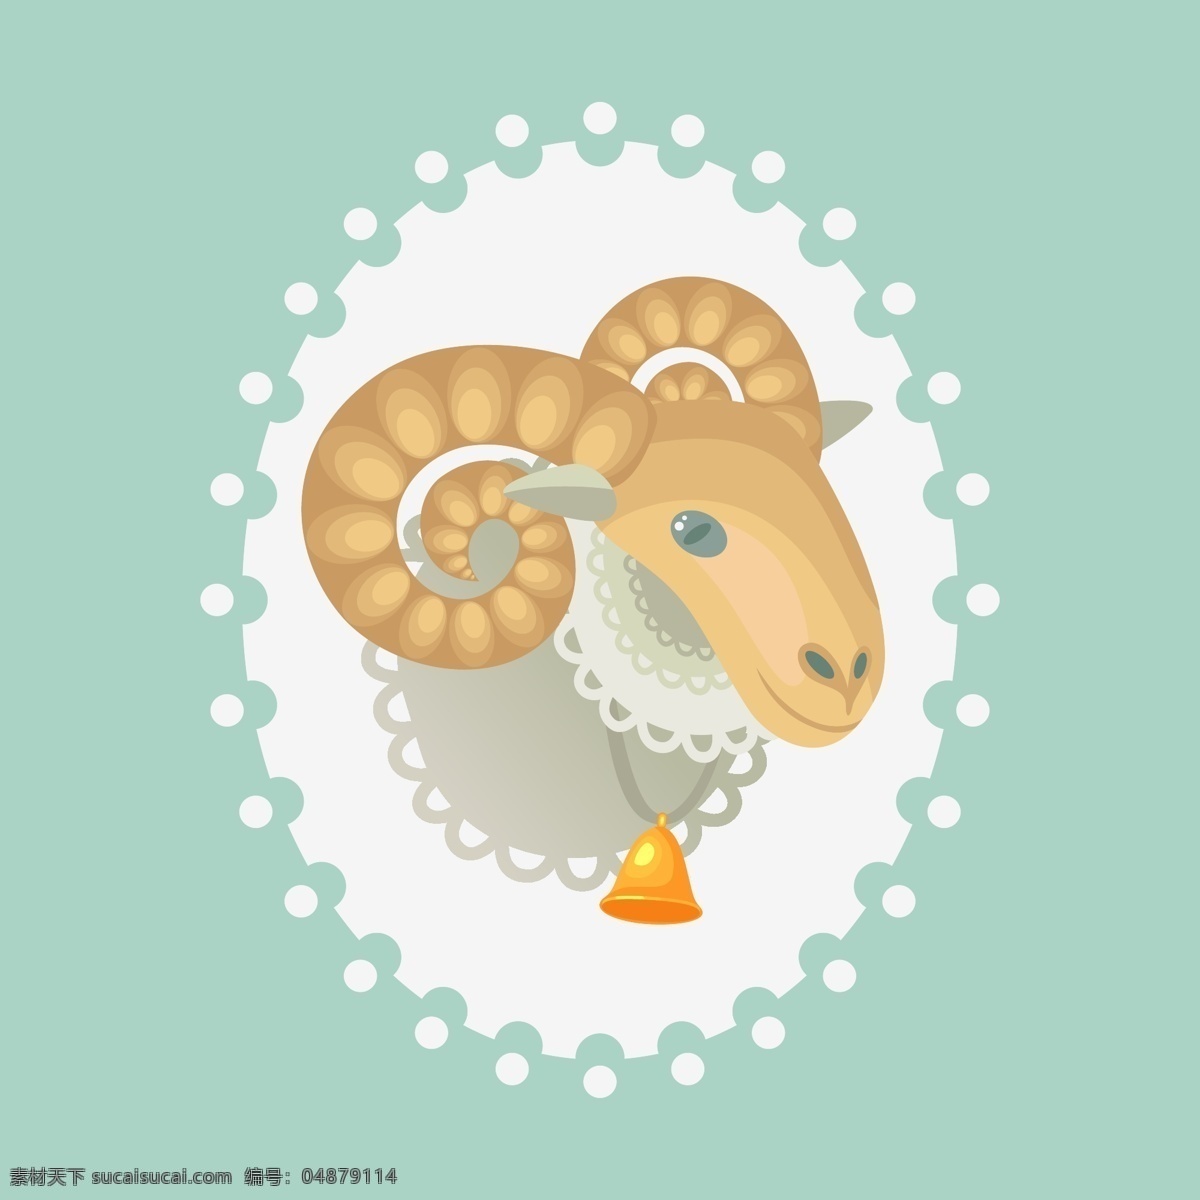 2015 动物 动物世界 家禽家畜 节日庆祝 卡通动物 卡通设计 卡通羊 羊年素材 矢量羊 矢量动物 绵羊 手绘 羊年设计元素 生物世界 文化艺术 节日素材 其他节日